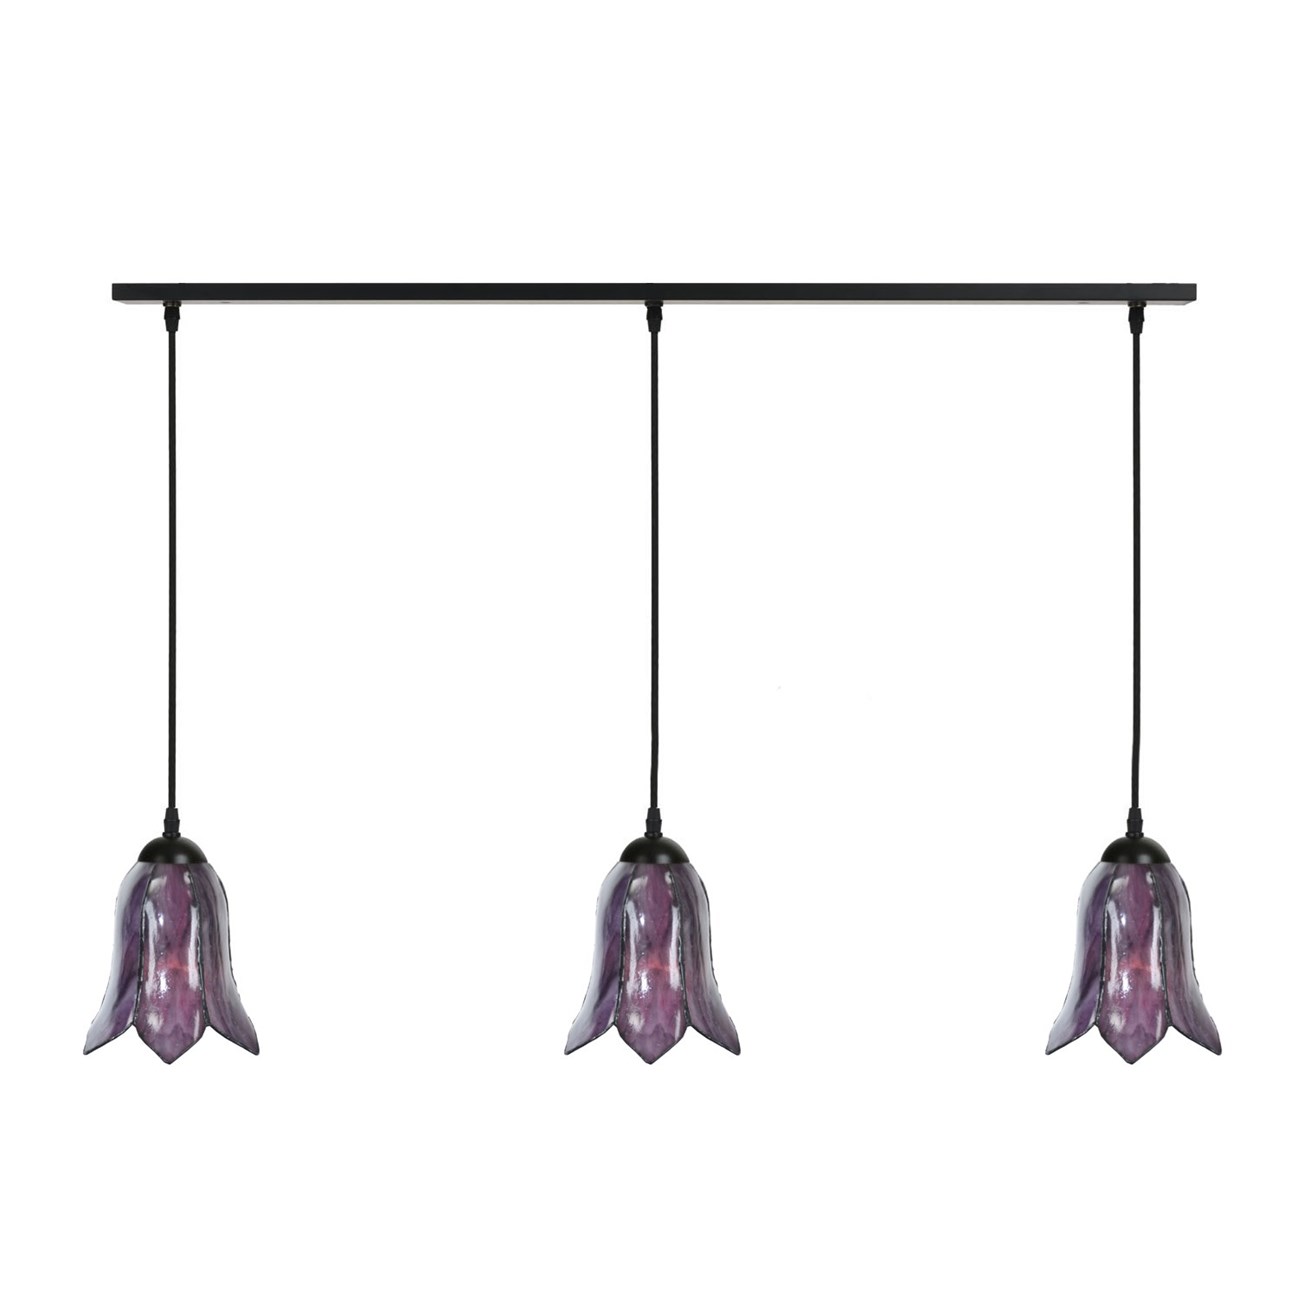 3 x Tiffany Gentian Purple aan plafondbalk